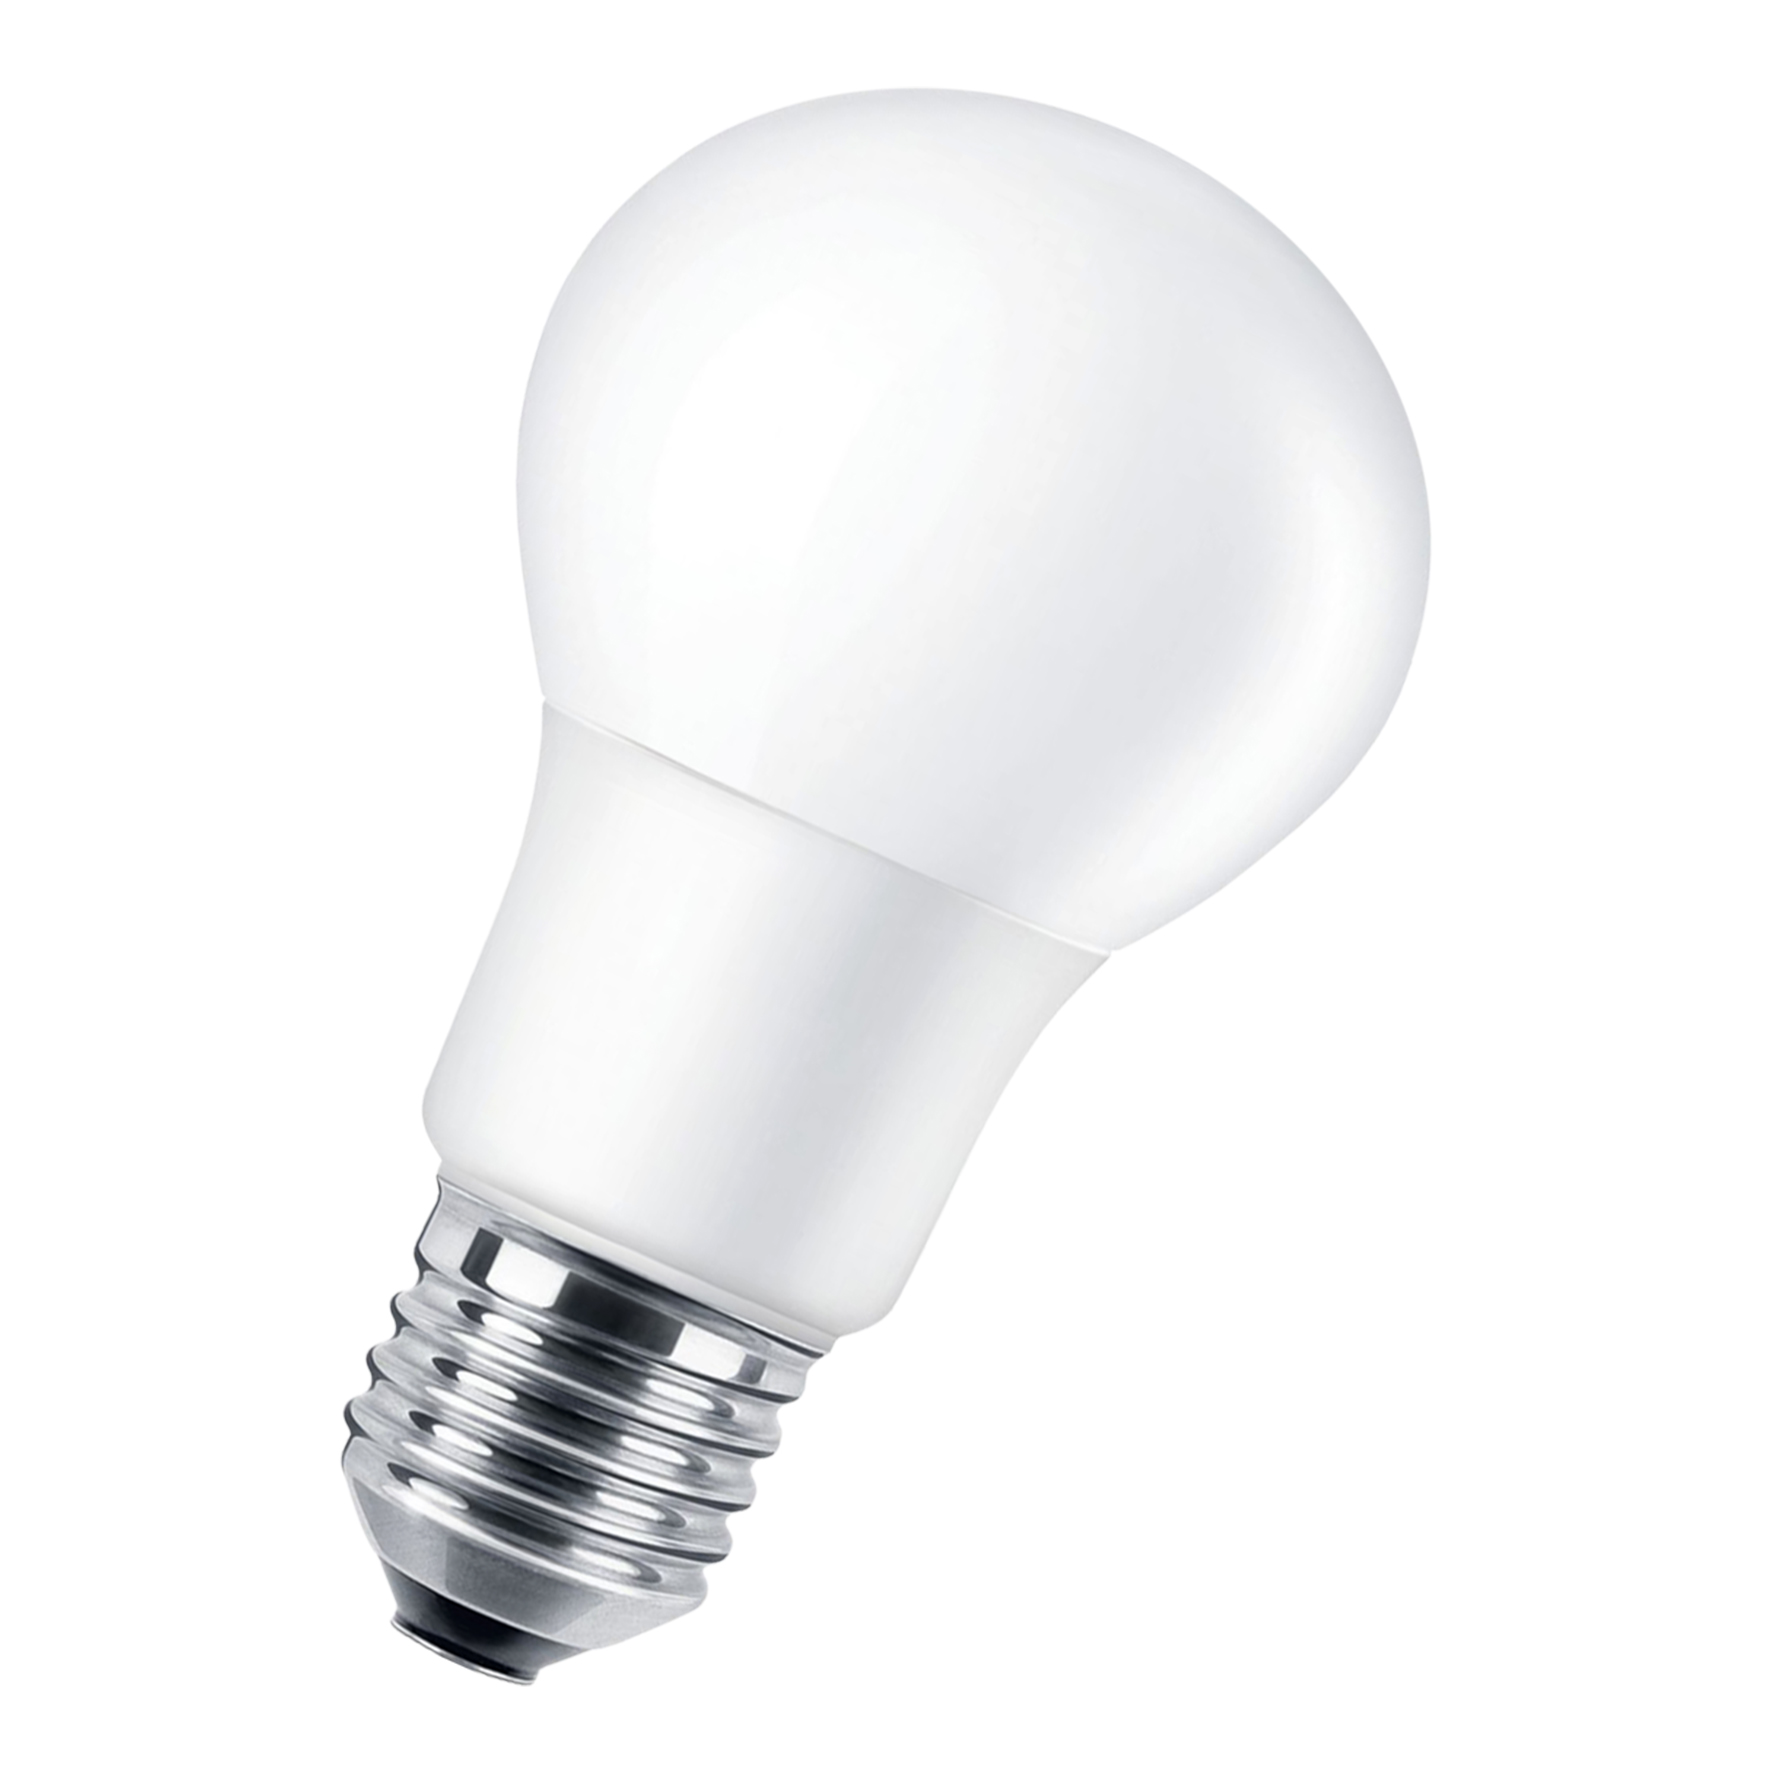 CorePro LEDbulb ND 7.5-60W A60 E27 830